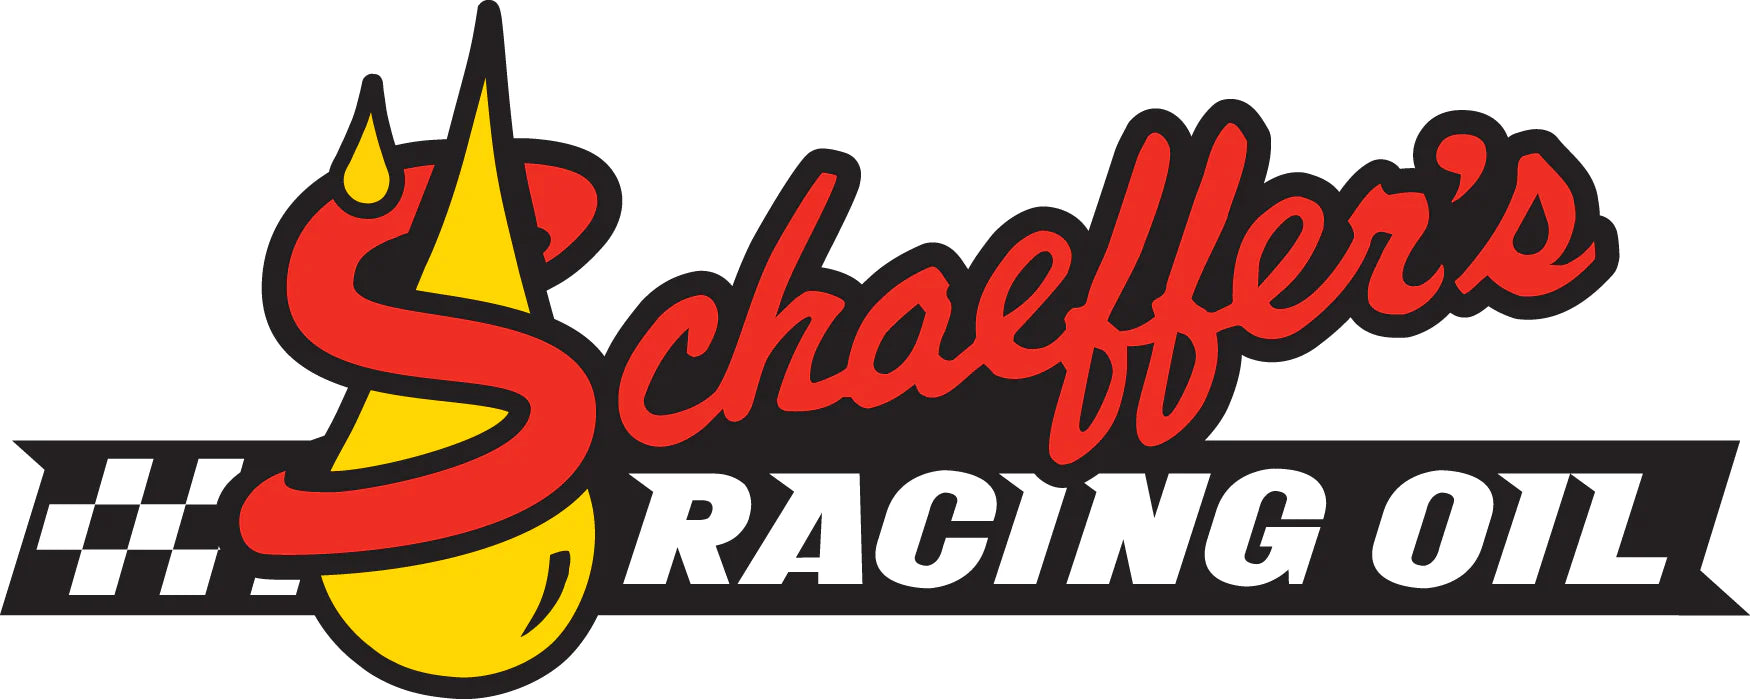 Schaeffer Racing Oil